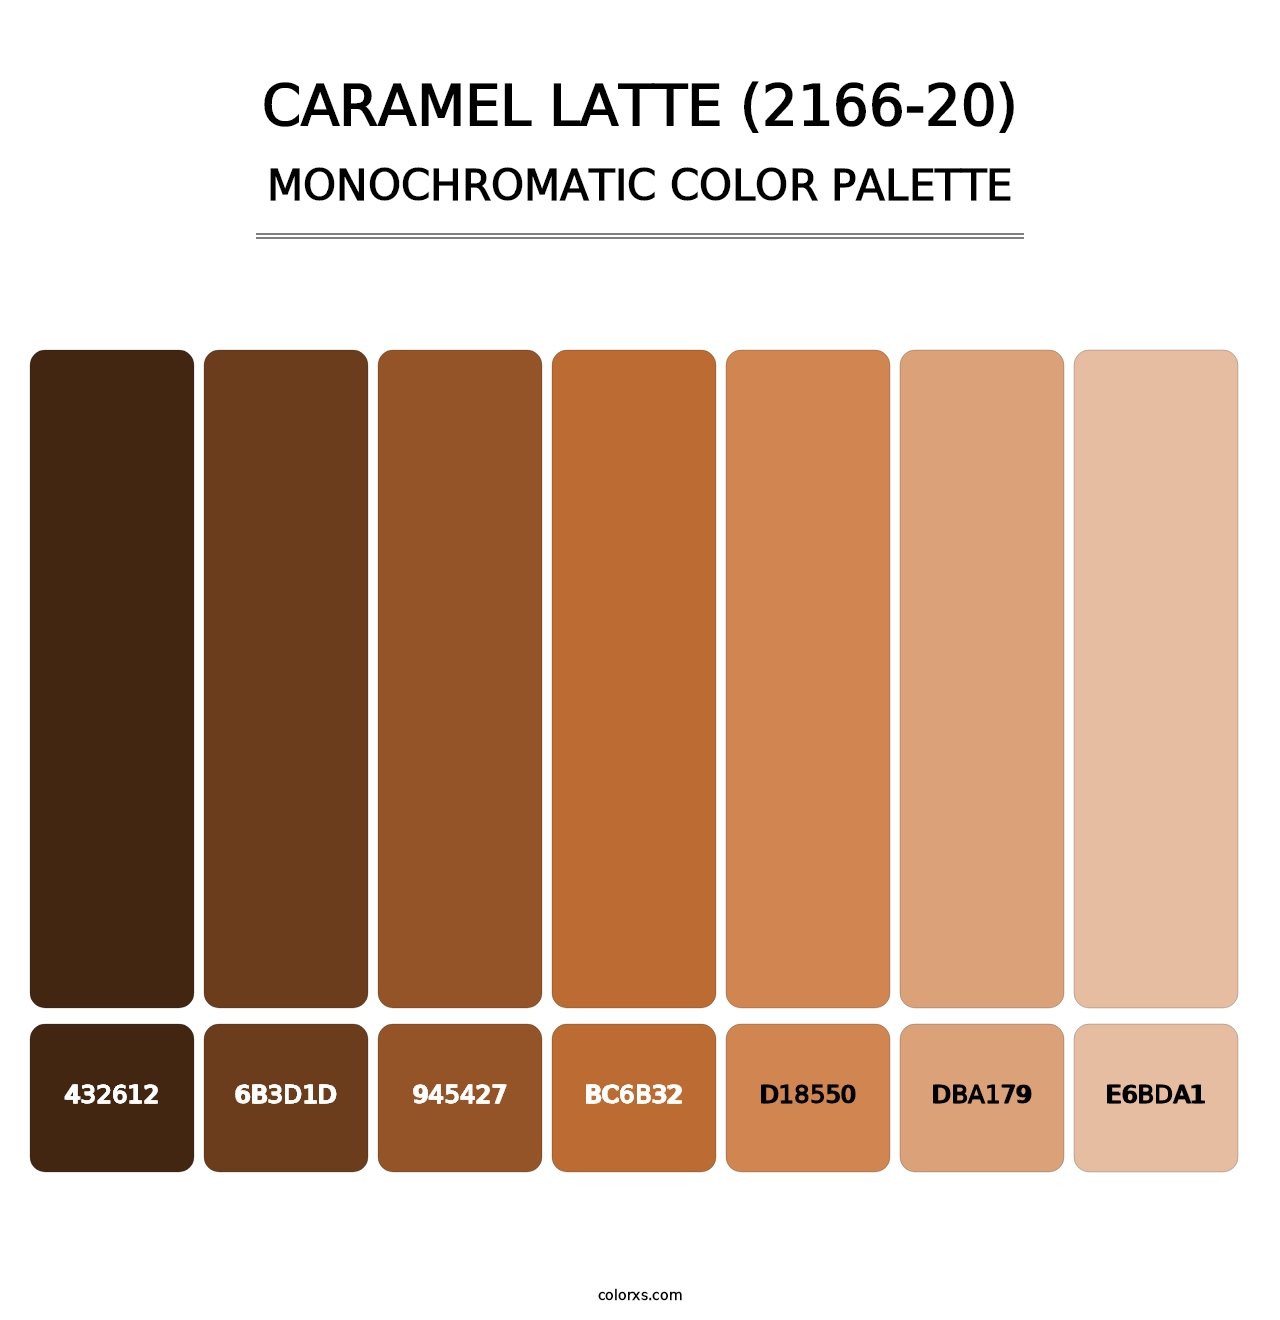 Caramel Latte (2166-20) - Monochromatic Color Palette